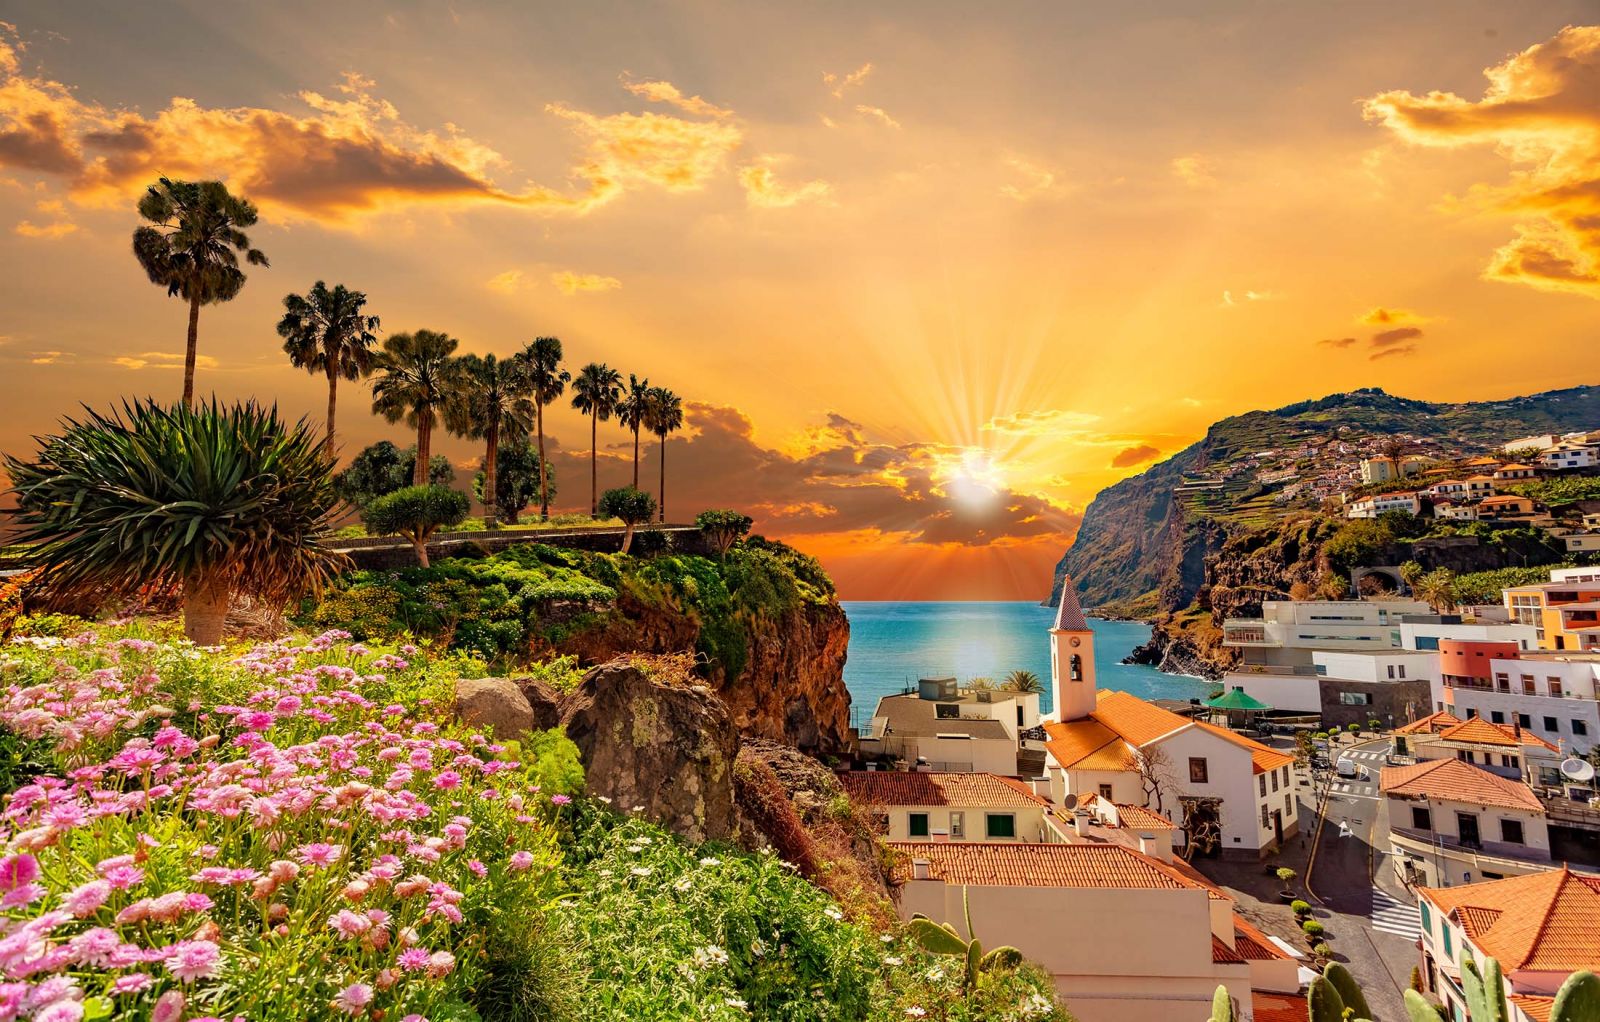  Madeira là một trong những hòn đảo xa xôi và kỳ lạ nhất của Châu Âu. 